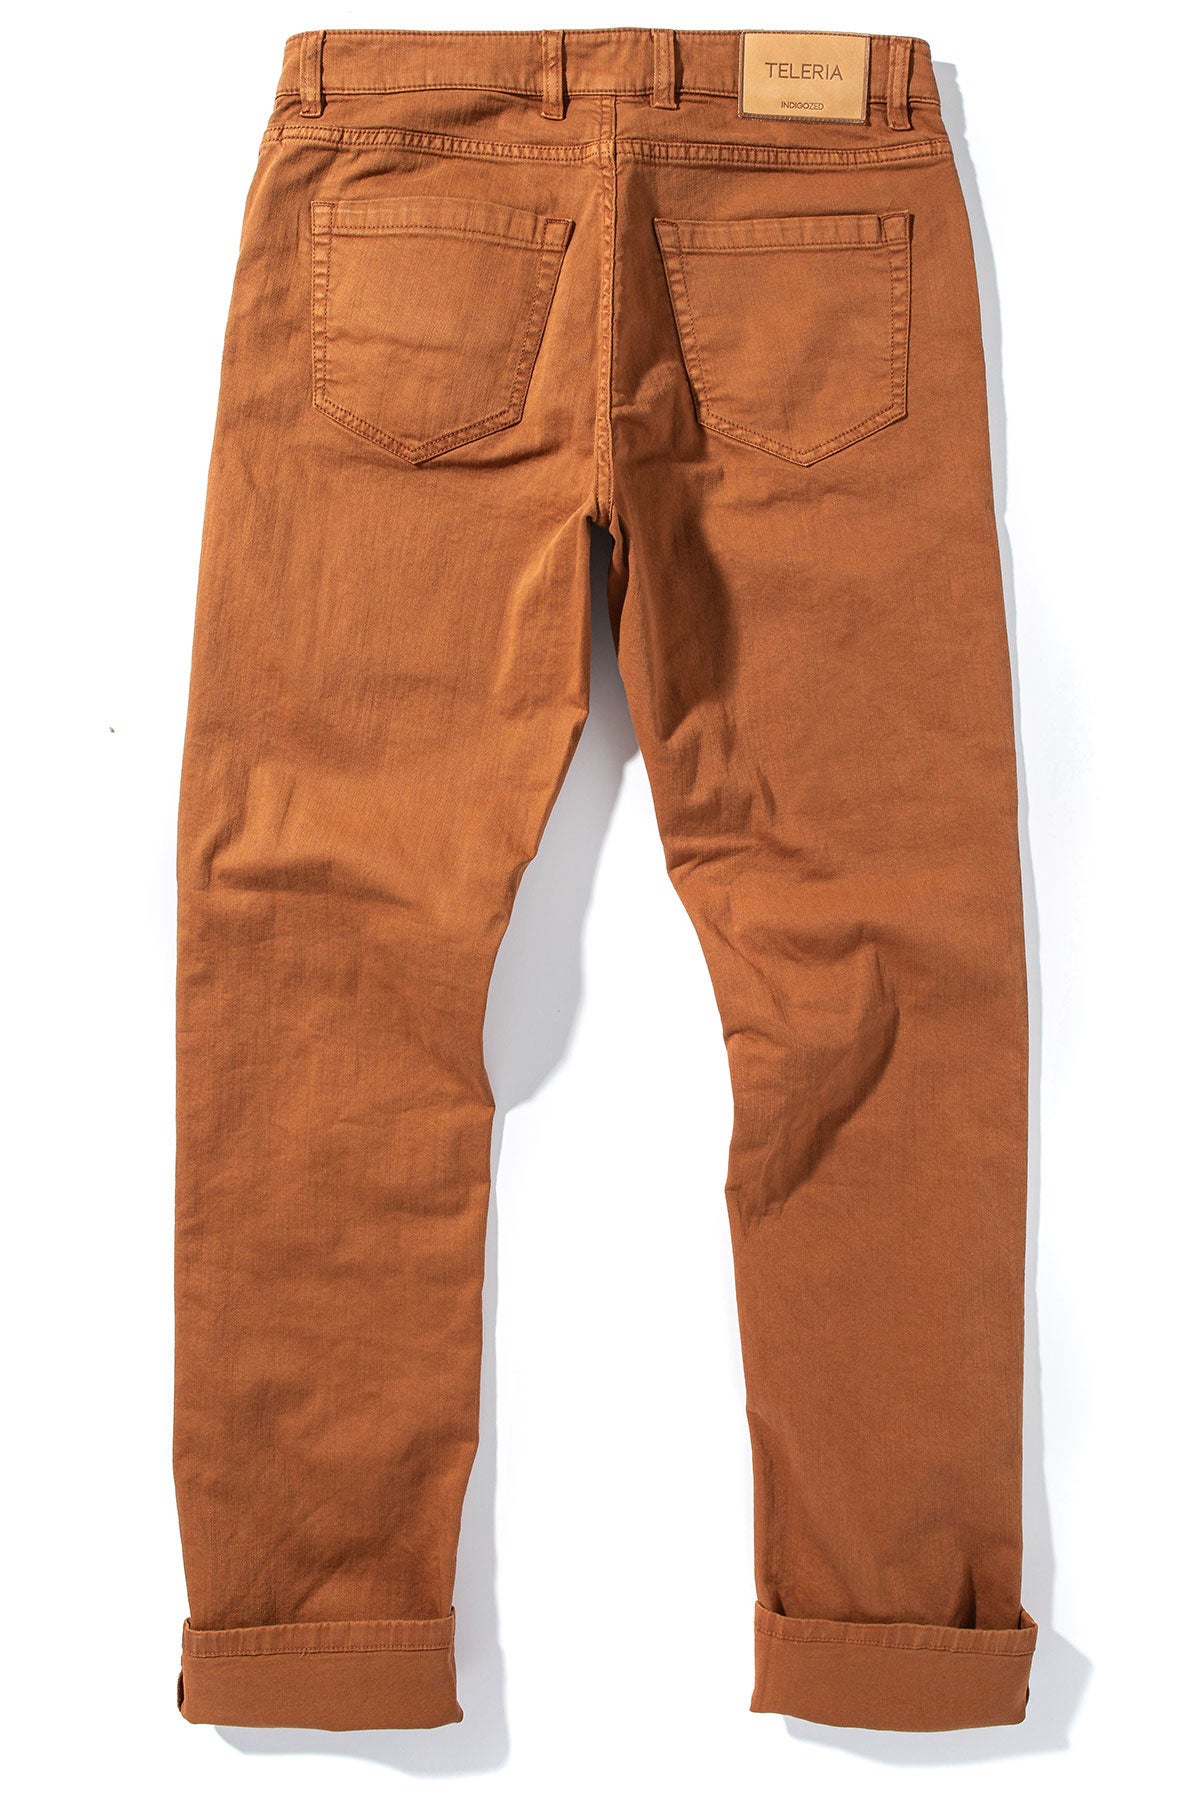 Ouray 5 Pocket Denim in Rhum | Mens - Pants - 5 Pocket | Teleria Zed